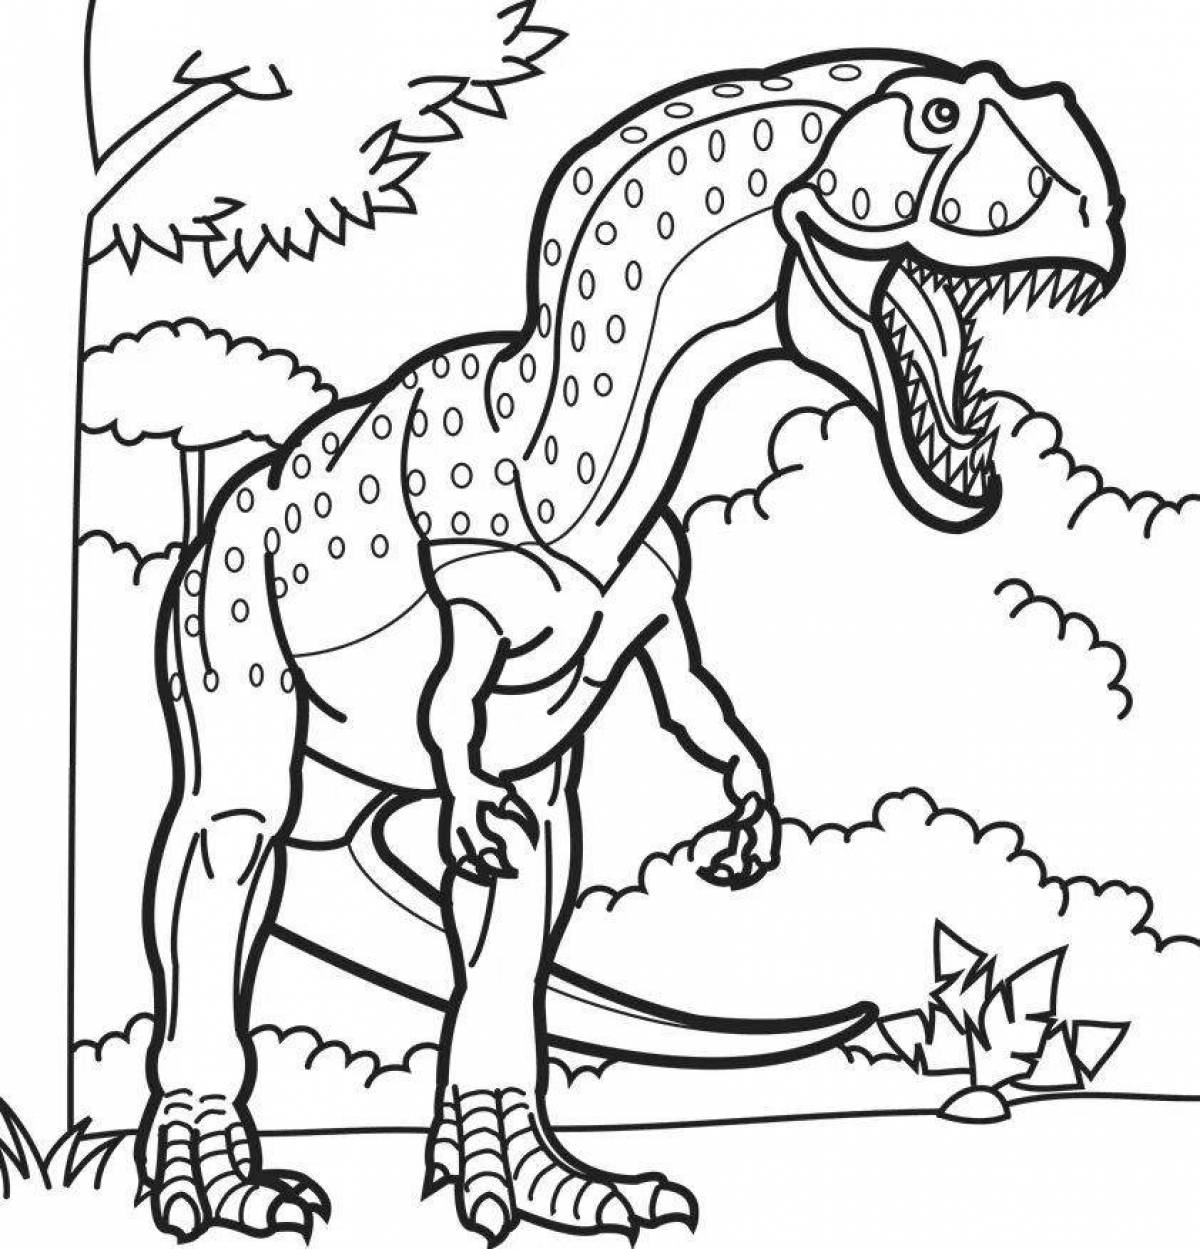 Удивительная раскраска динозавров для детей 7 лет